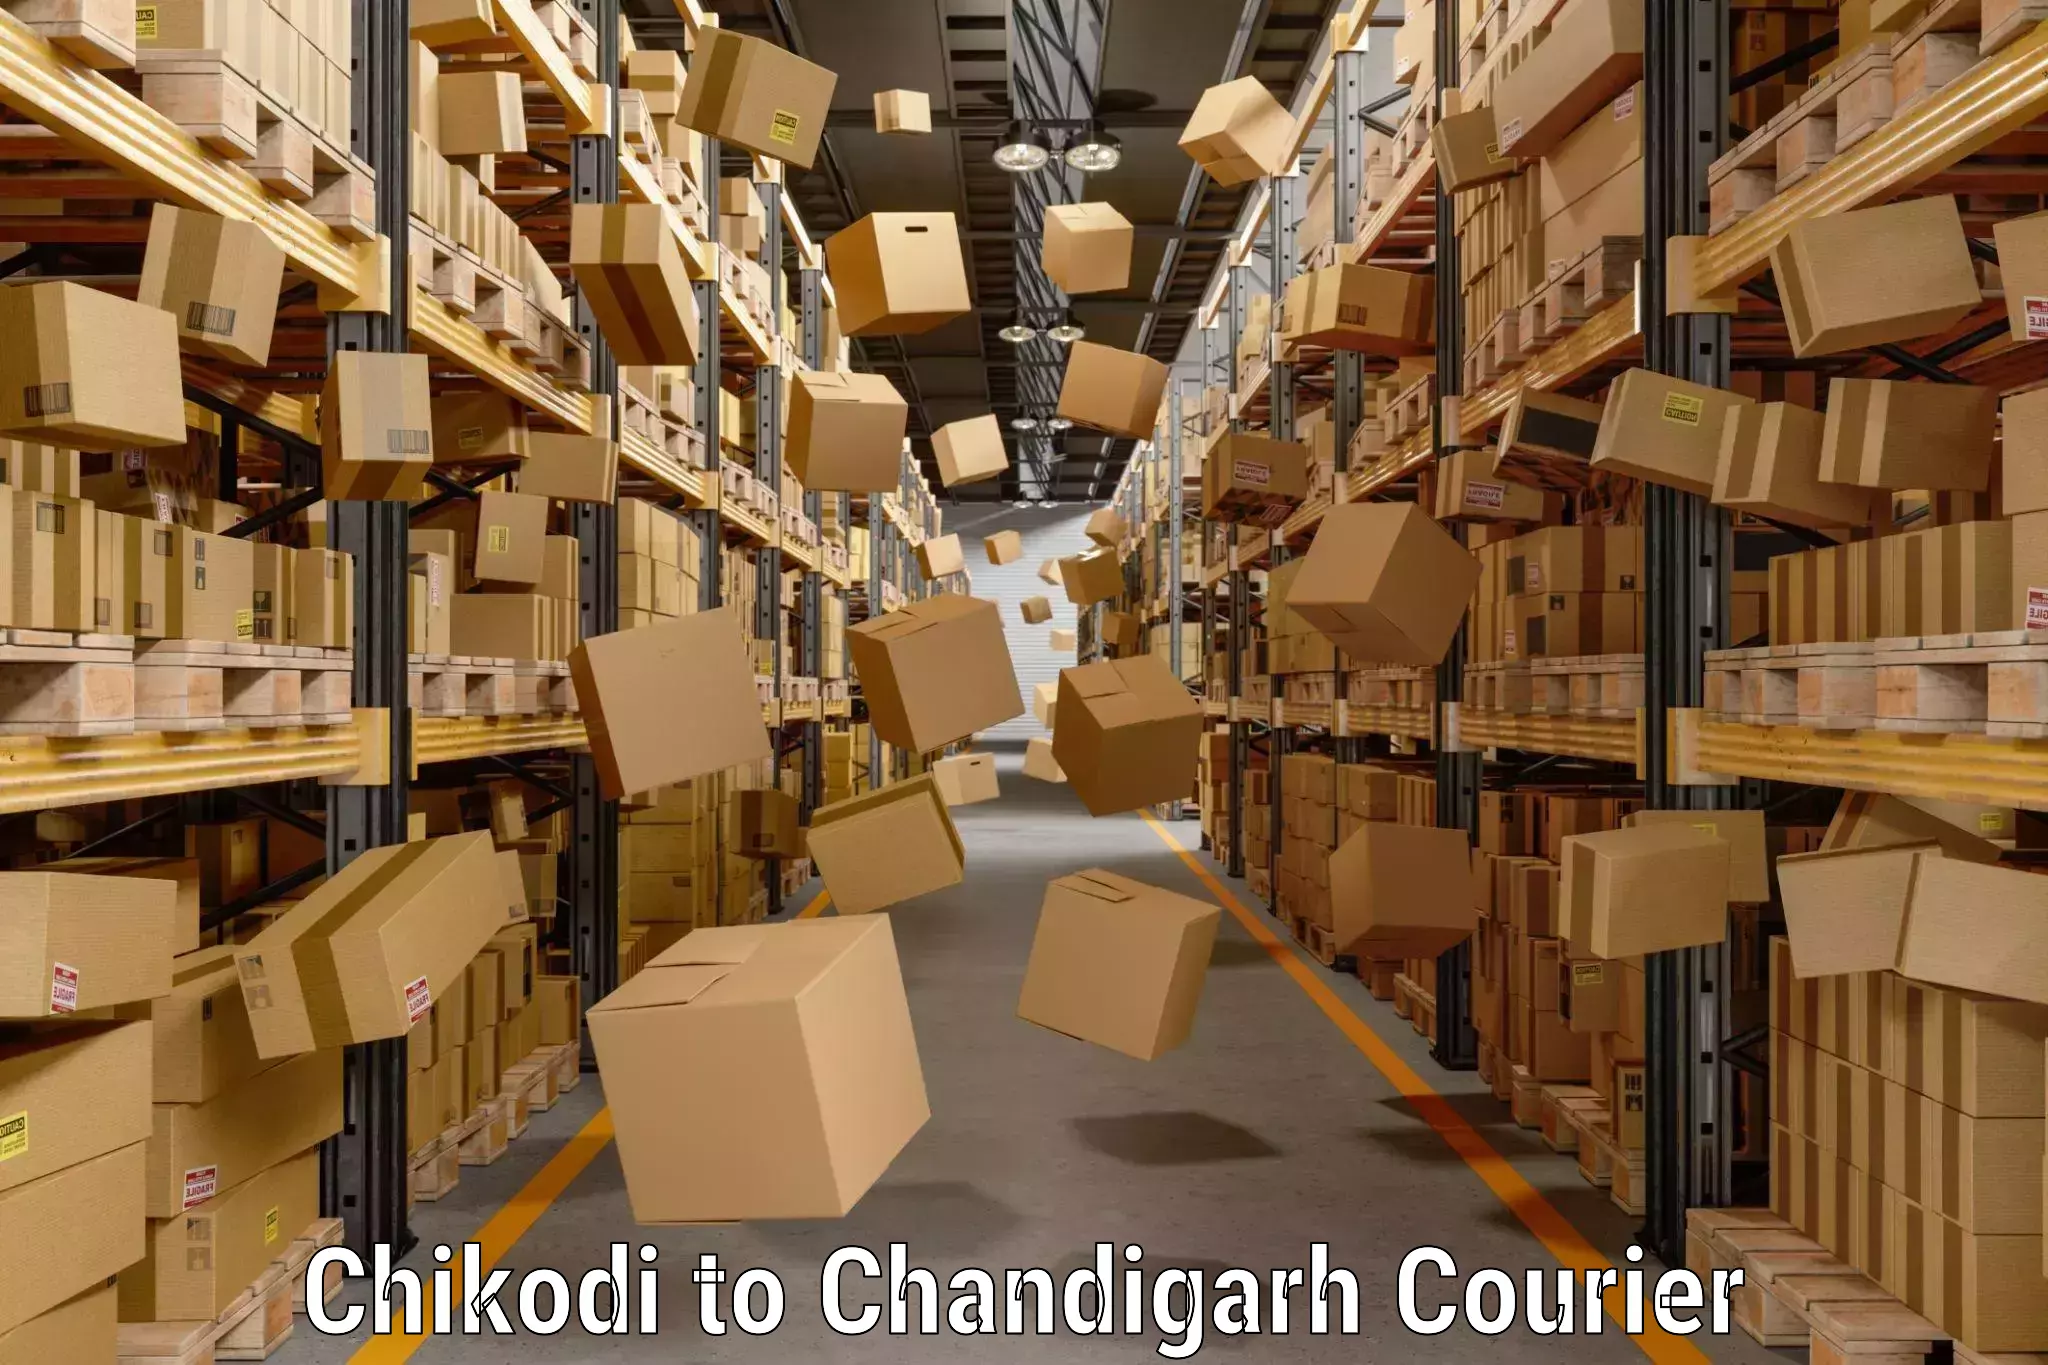 Luggage transport operations Chikodi to Chandigarh